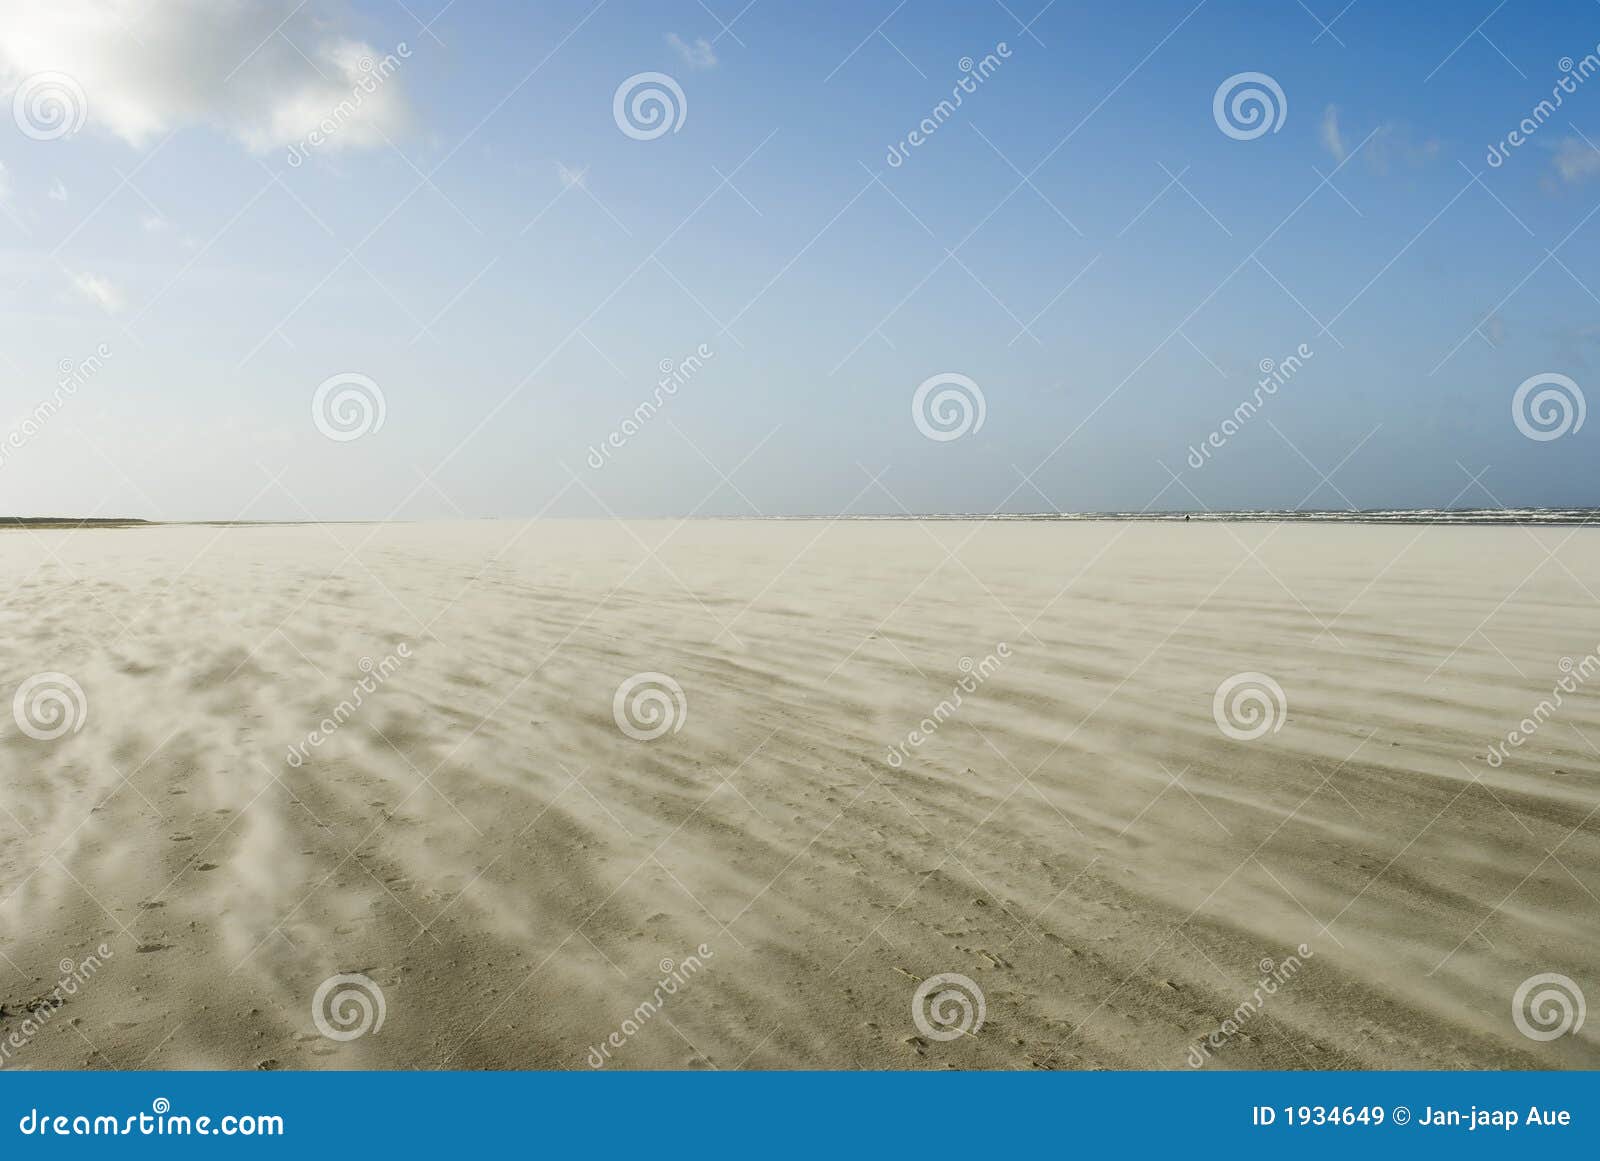 sandstorm on schiermonnikoog beach